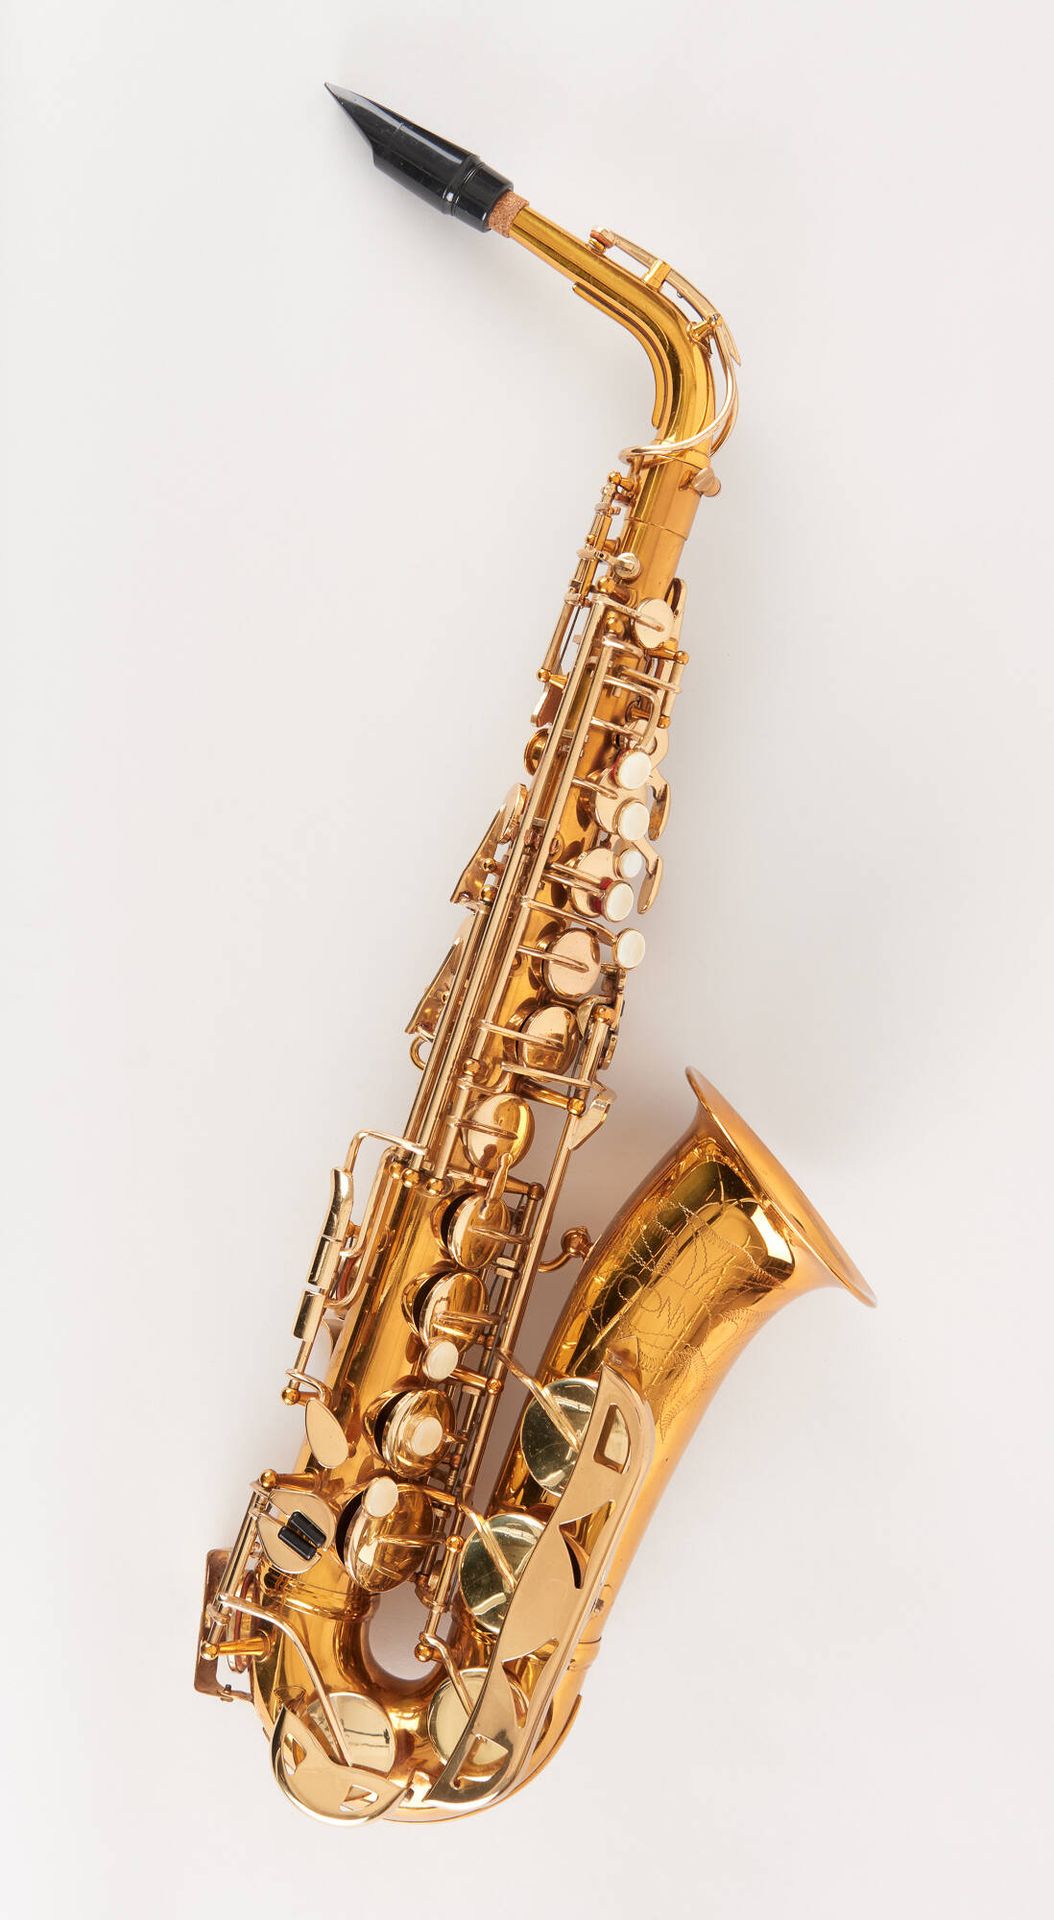 Conn. Instrumento musical: Saxofón tenor, modelo Selmer.
Marca Conn.
Numerado 20&hellip;